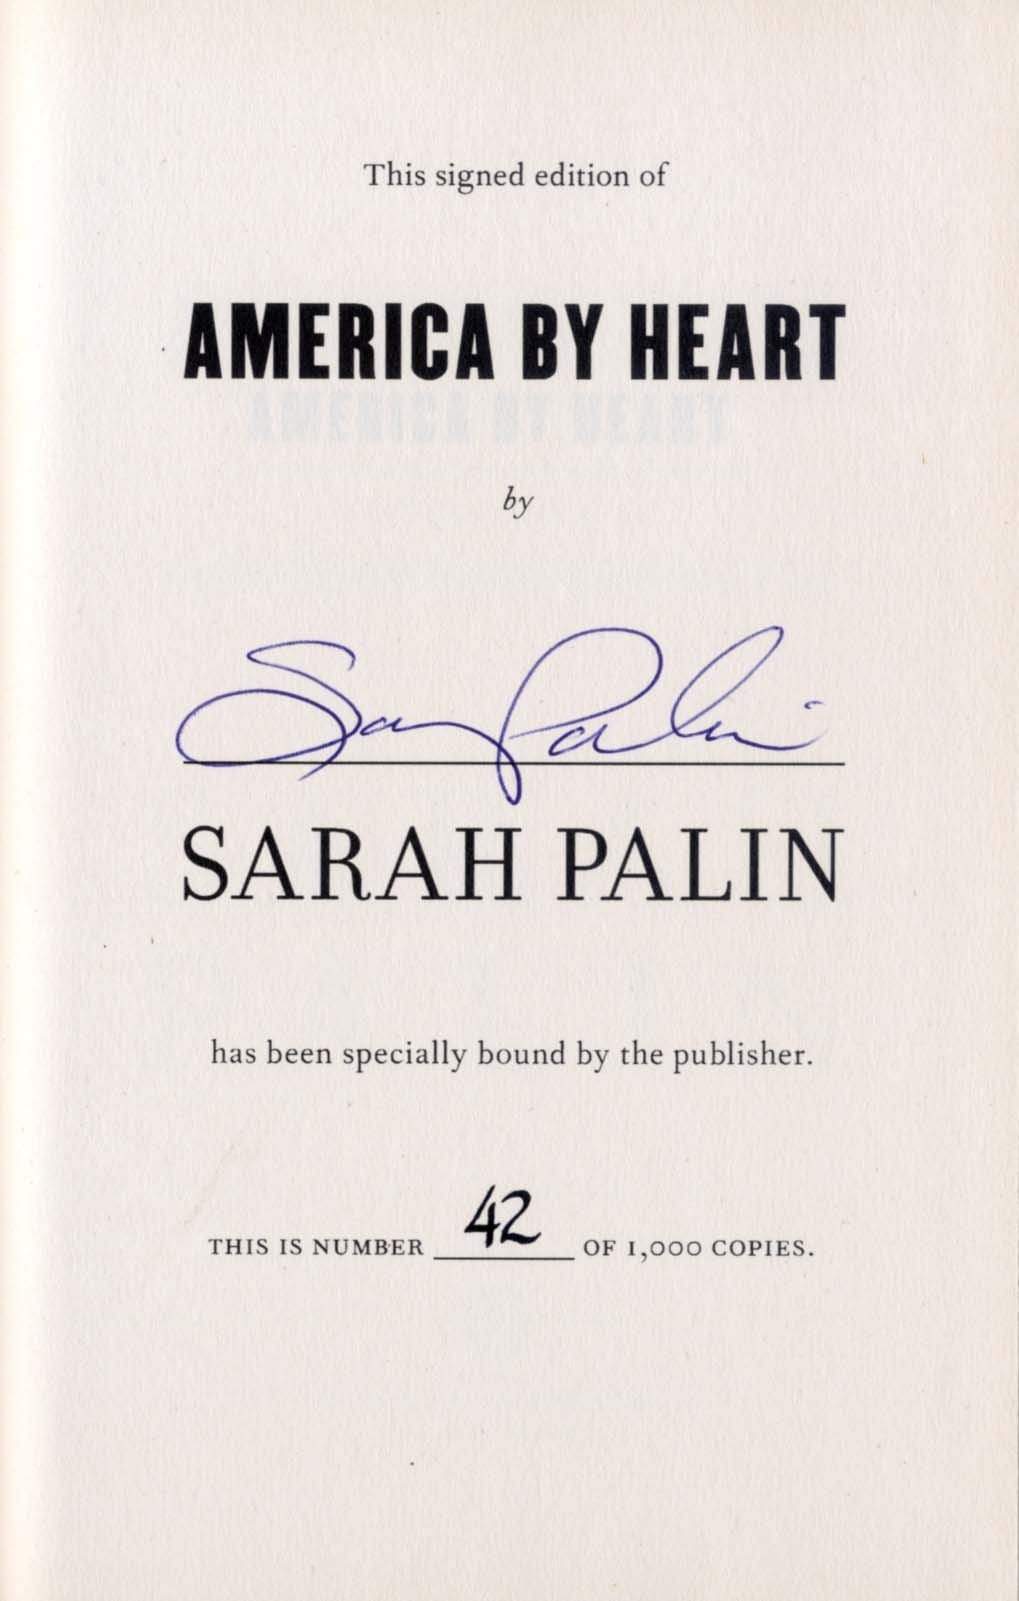 Palin, Sarah autograph